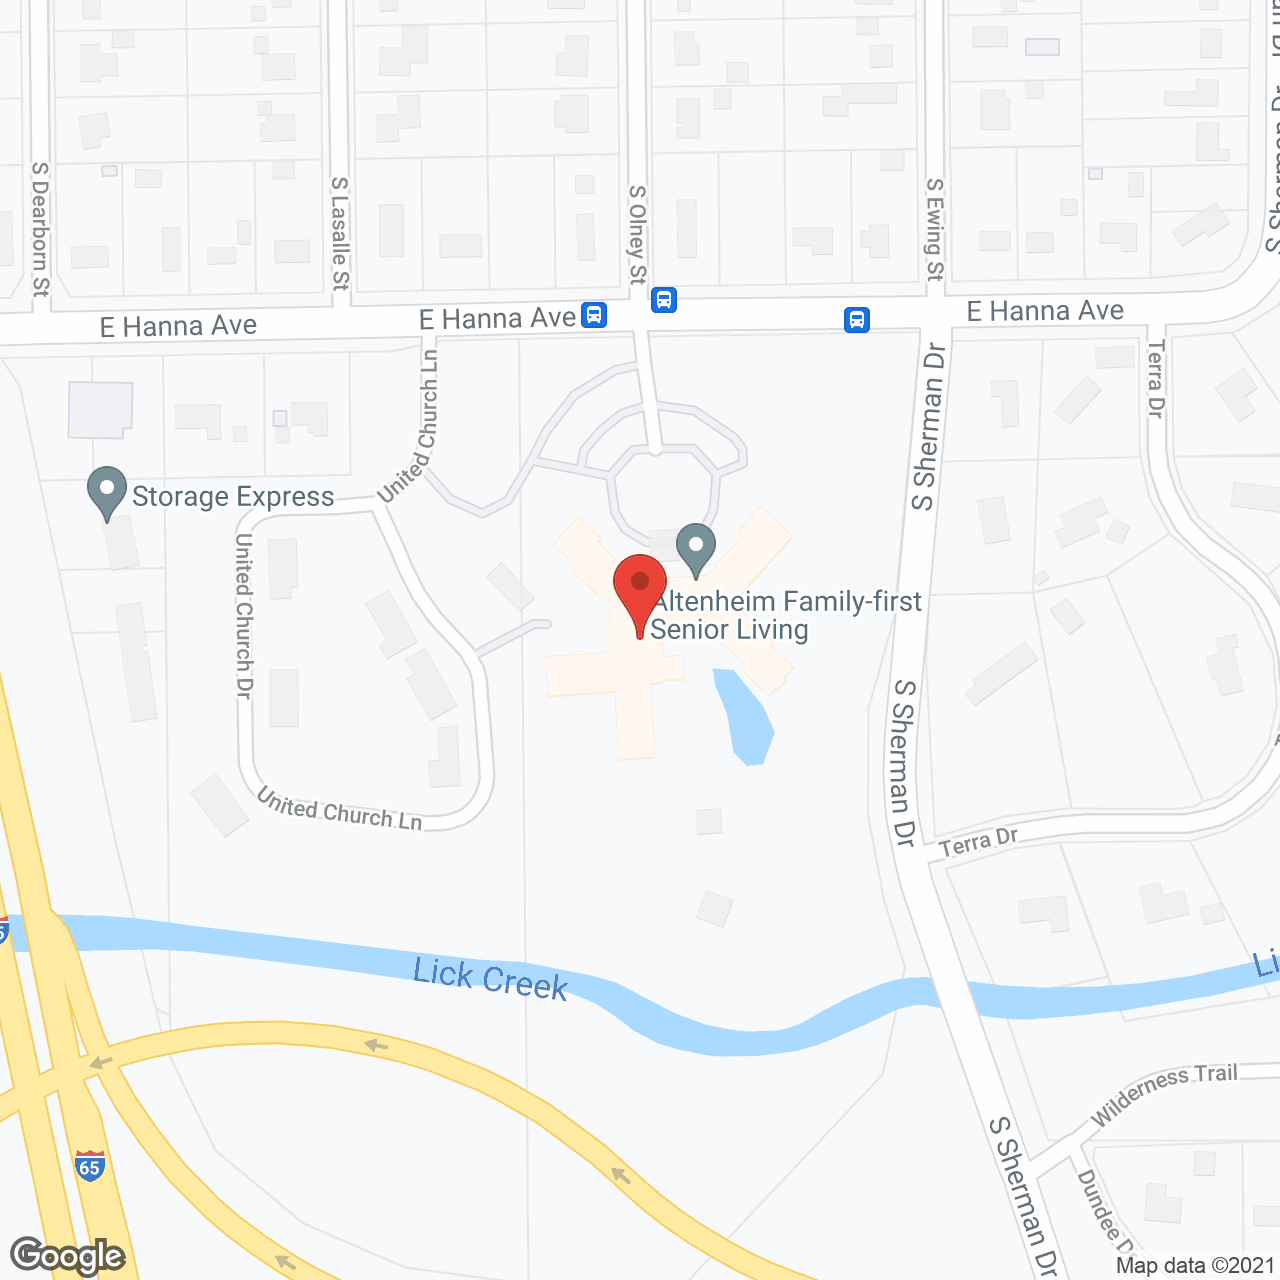 Altenheim in google map